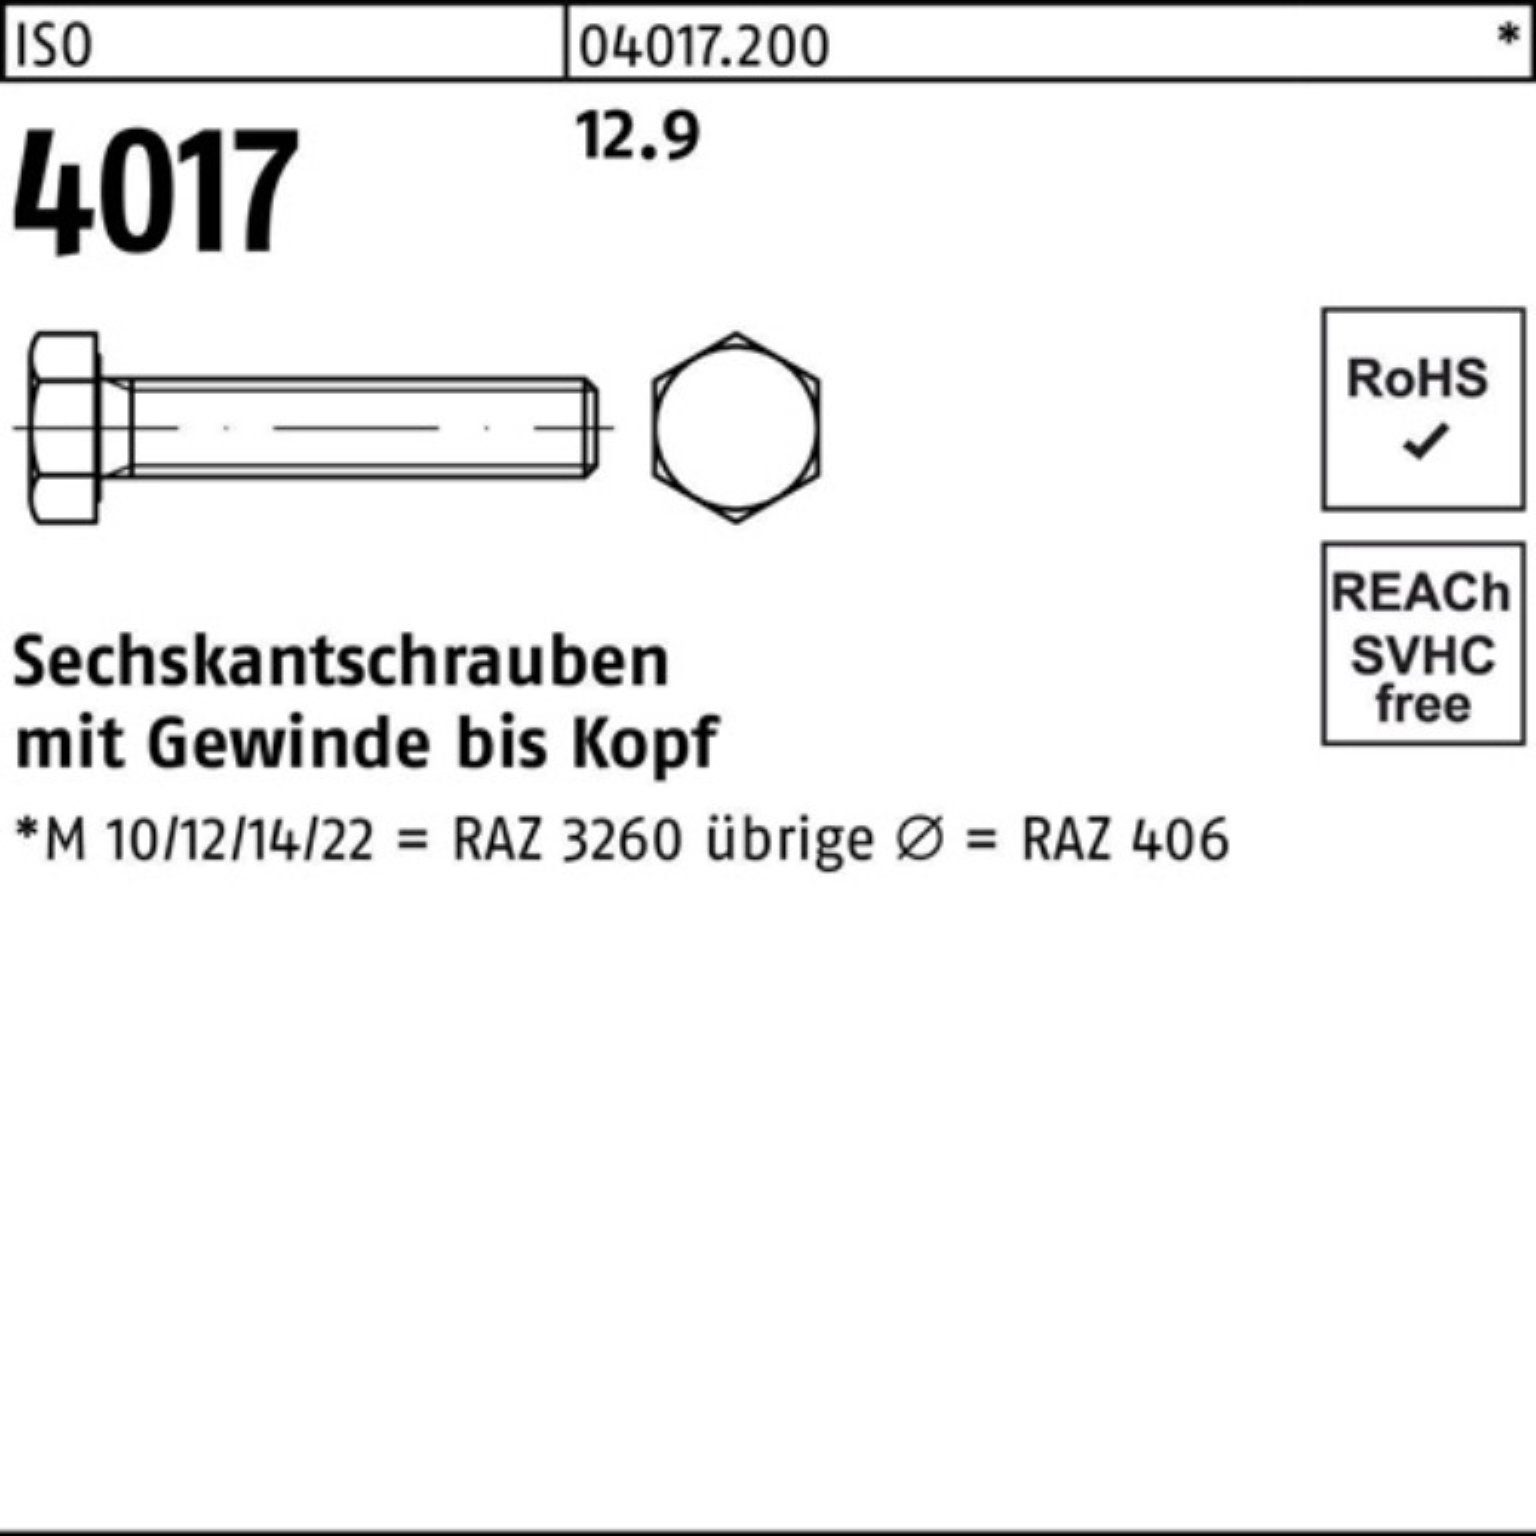 Stück 40 Sechskantschraube 35 12.9 Pack ISO ISO Sechskantschraube 200er 4017 200 Bufab VG M8x